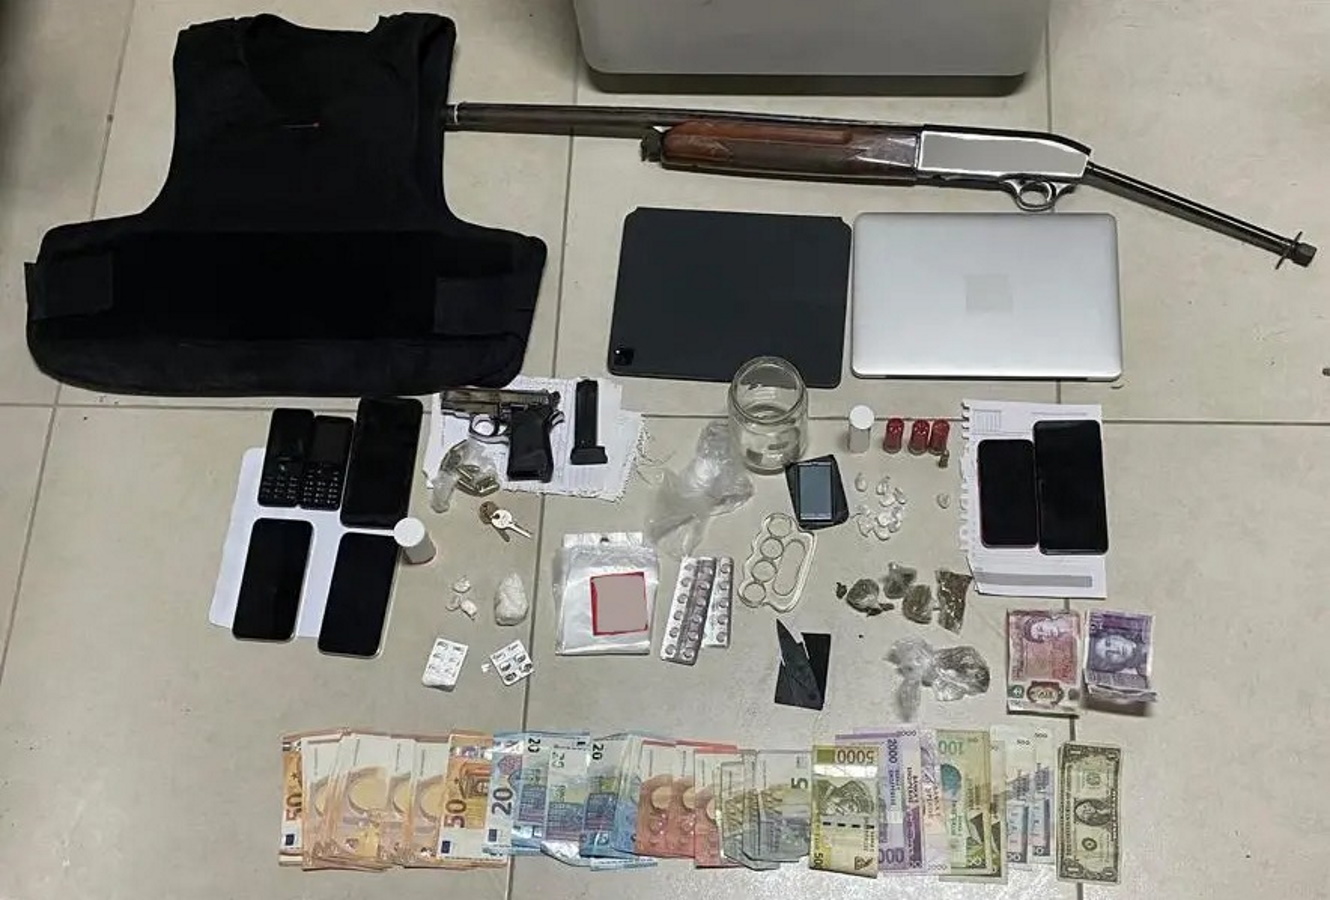 Ζάκυνθος: Έξι συλλήψεις μετά από μεγάλη αστυνομική επιχείρηση – Βρήκαν όπλα και ναρκωτικά